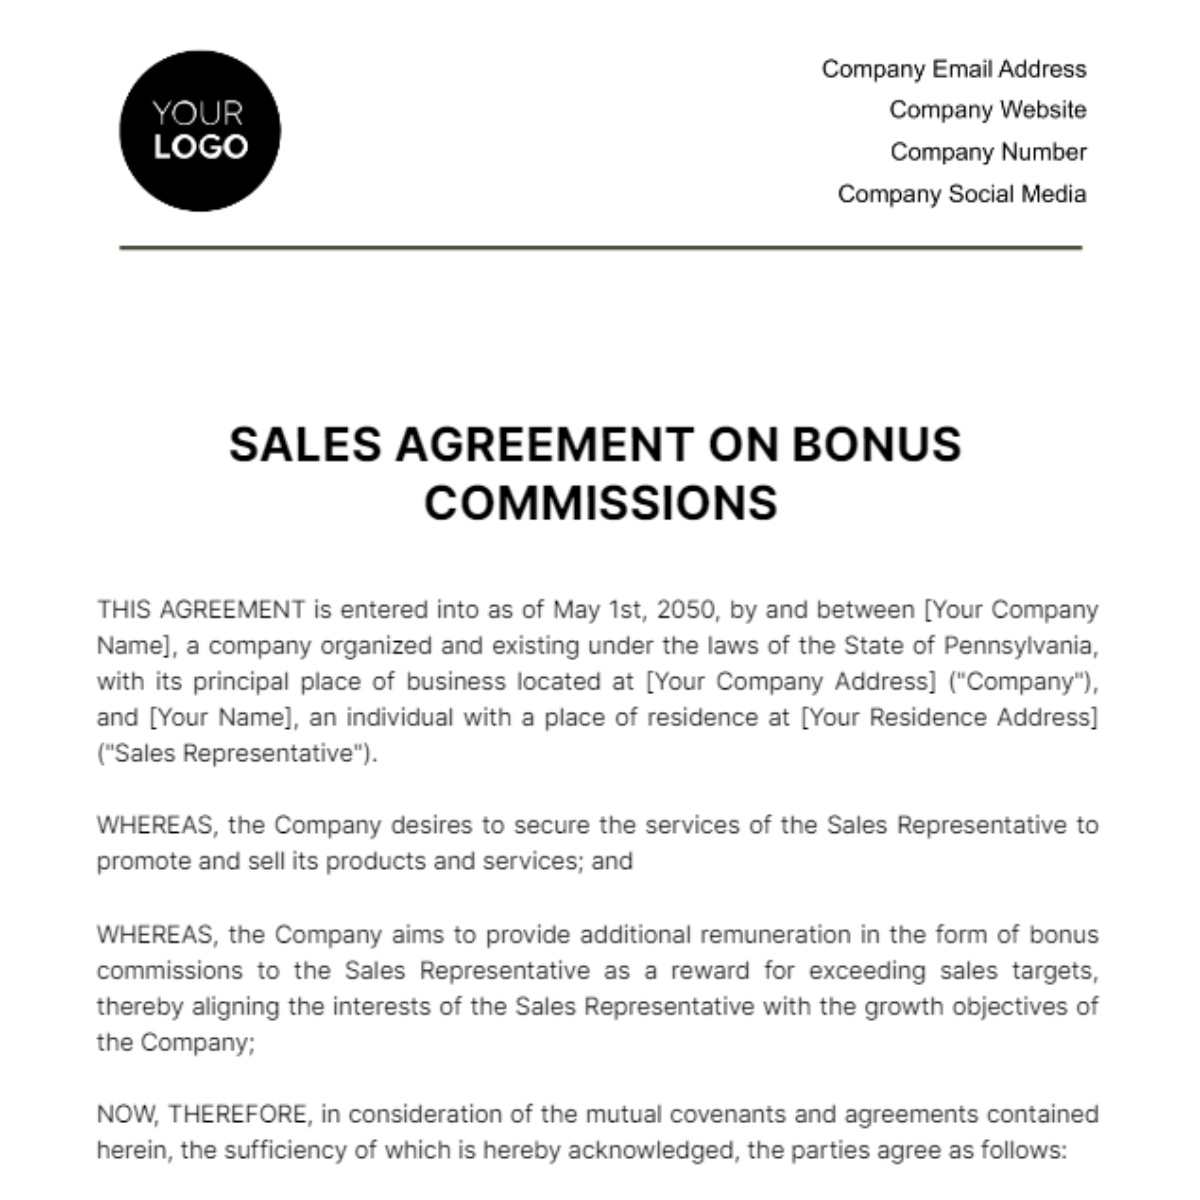 Free Sales Agreement on Bonus Commissions Template